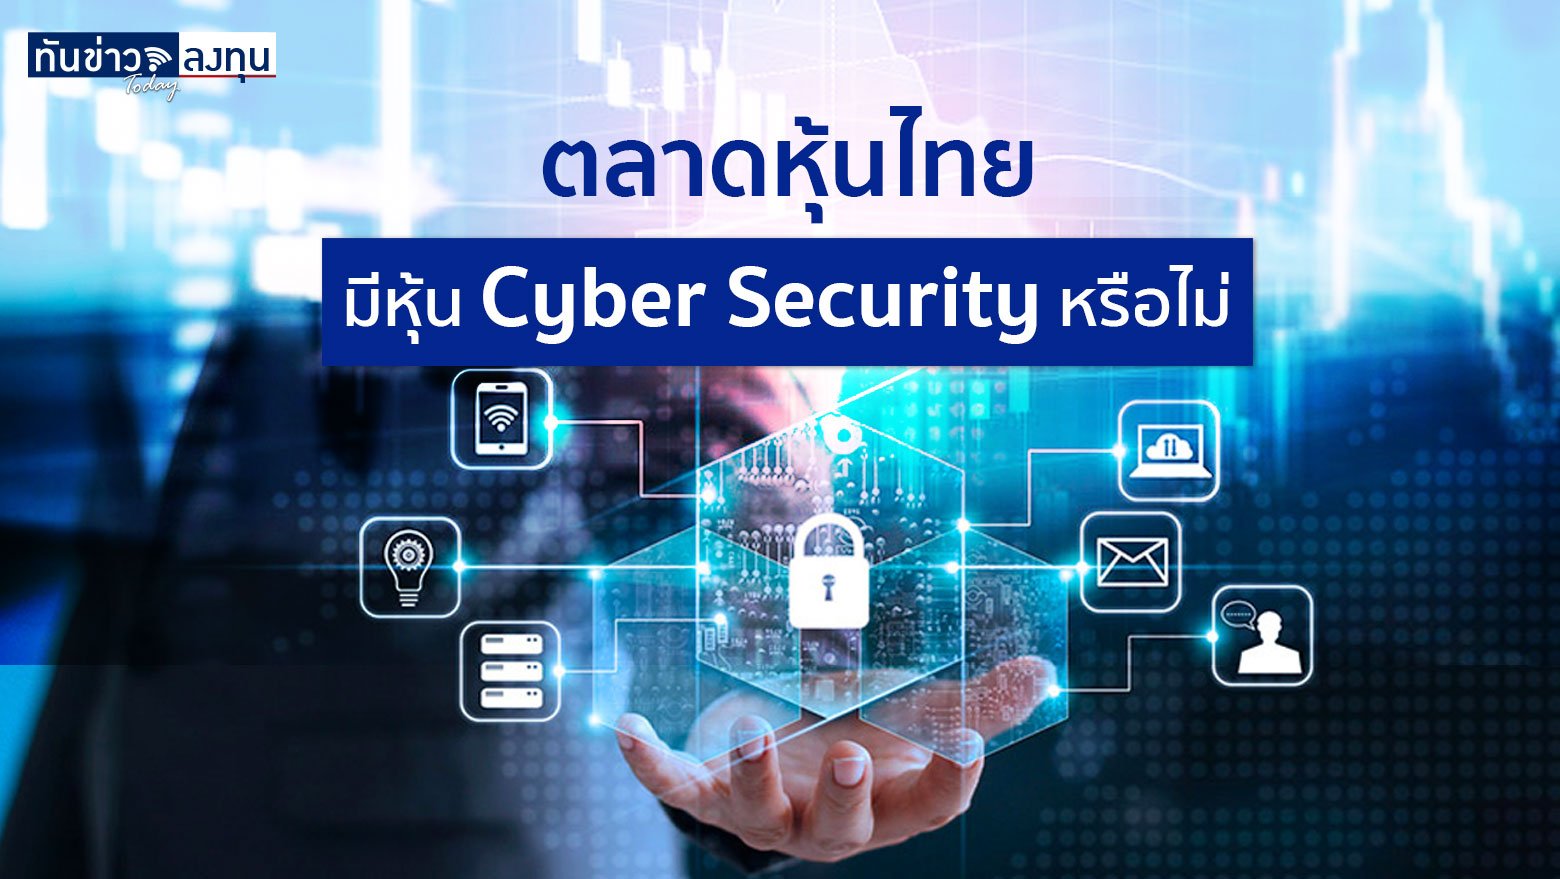 ตลาดหุ้นไทยมีหุ้น Cyber Security หรือไม่